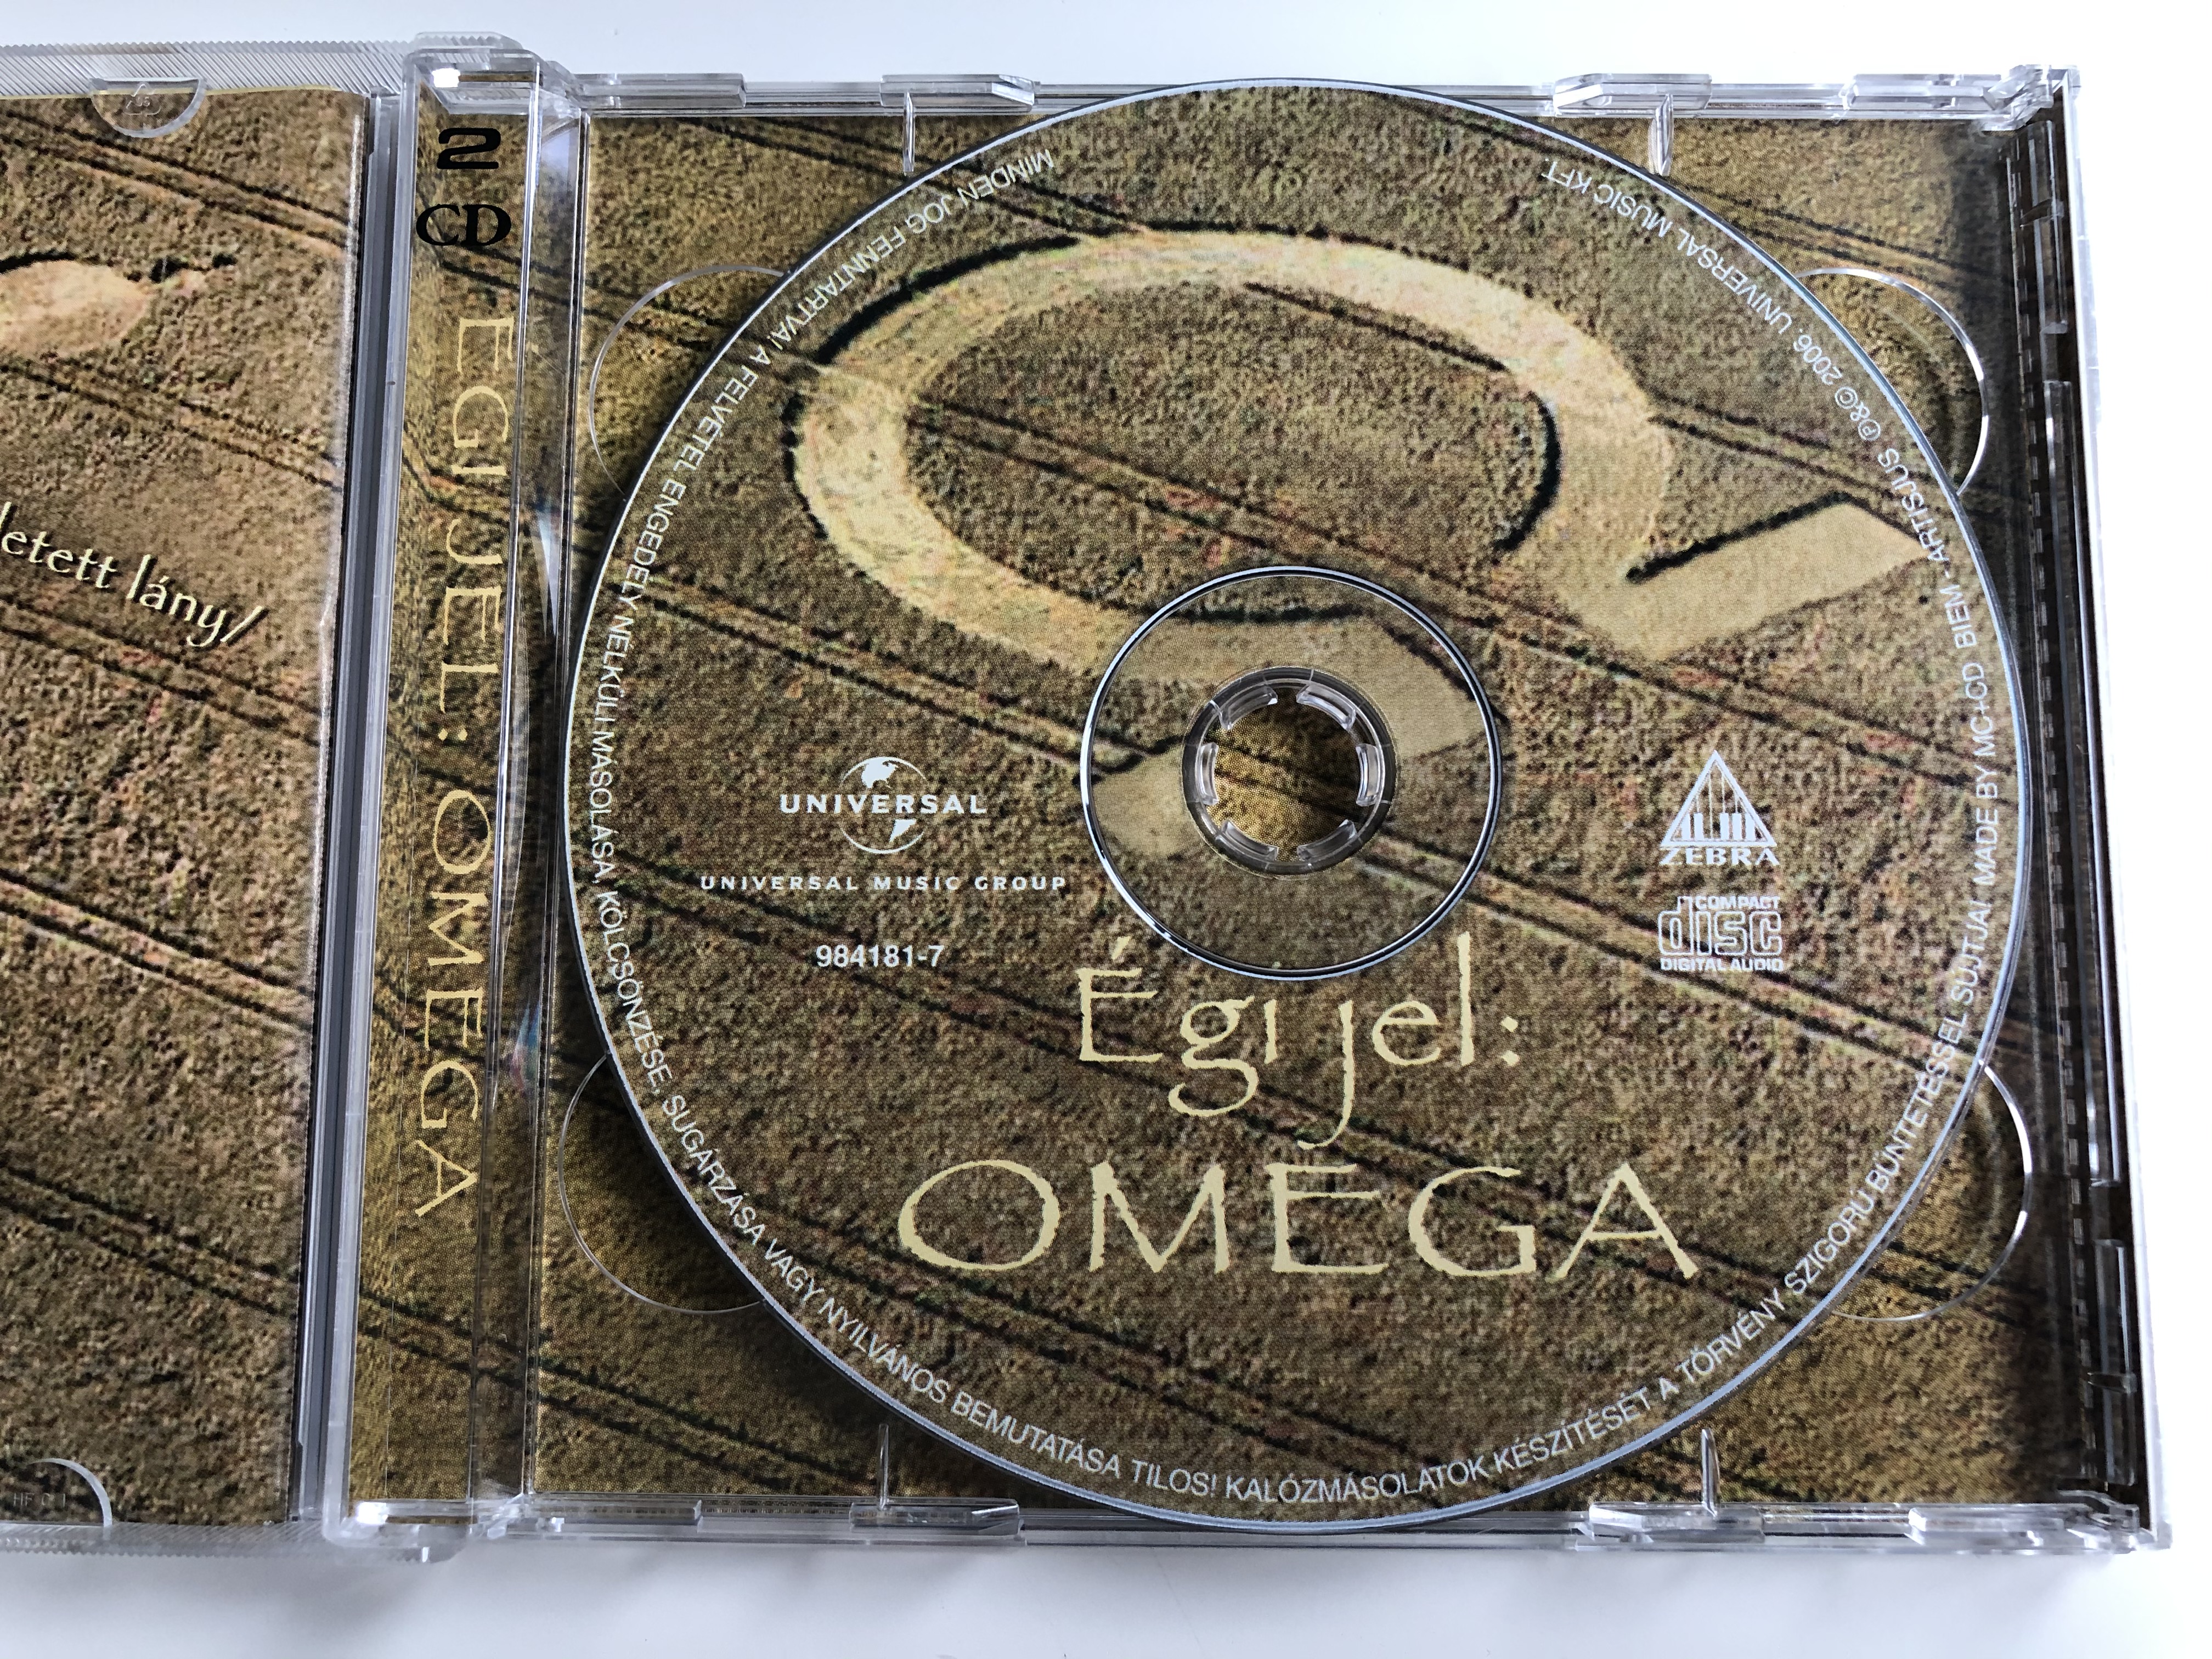 gi-jel-omega-zebra-audio-cd-dvd-cd-2006-984181-7-7-.jpg